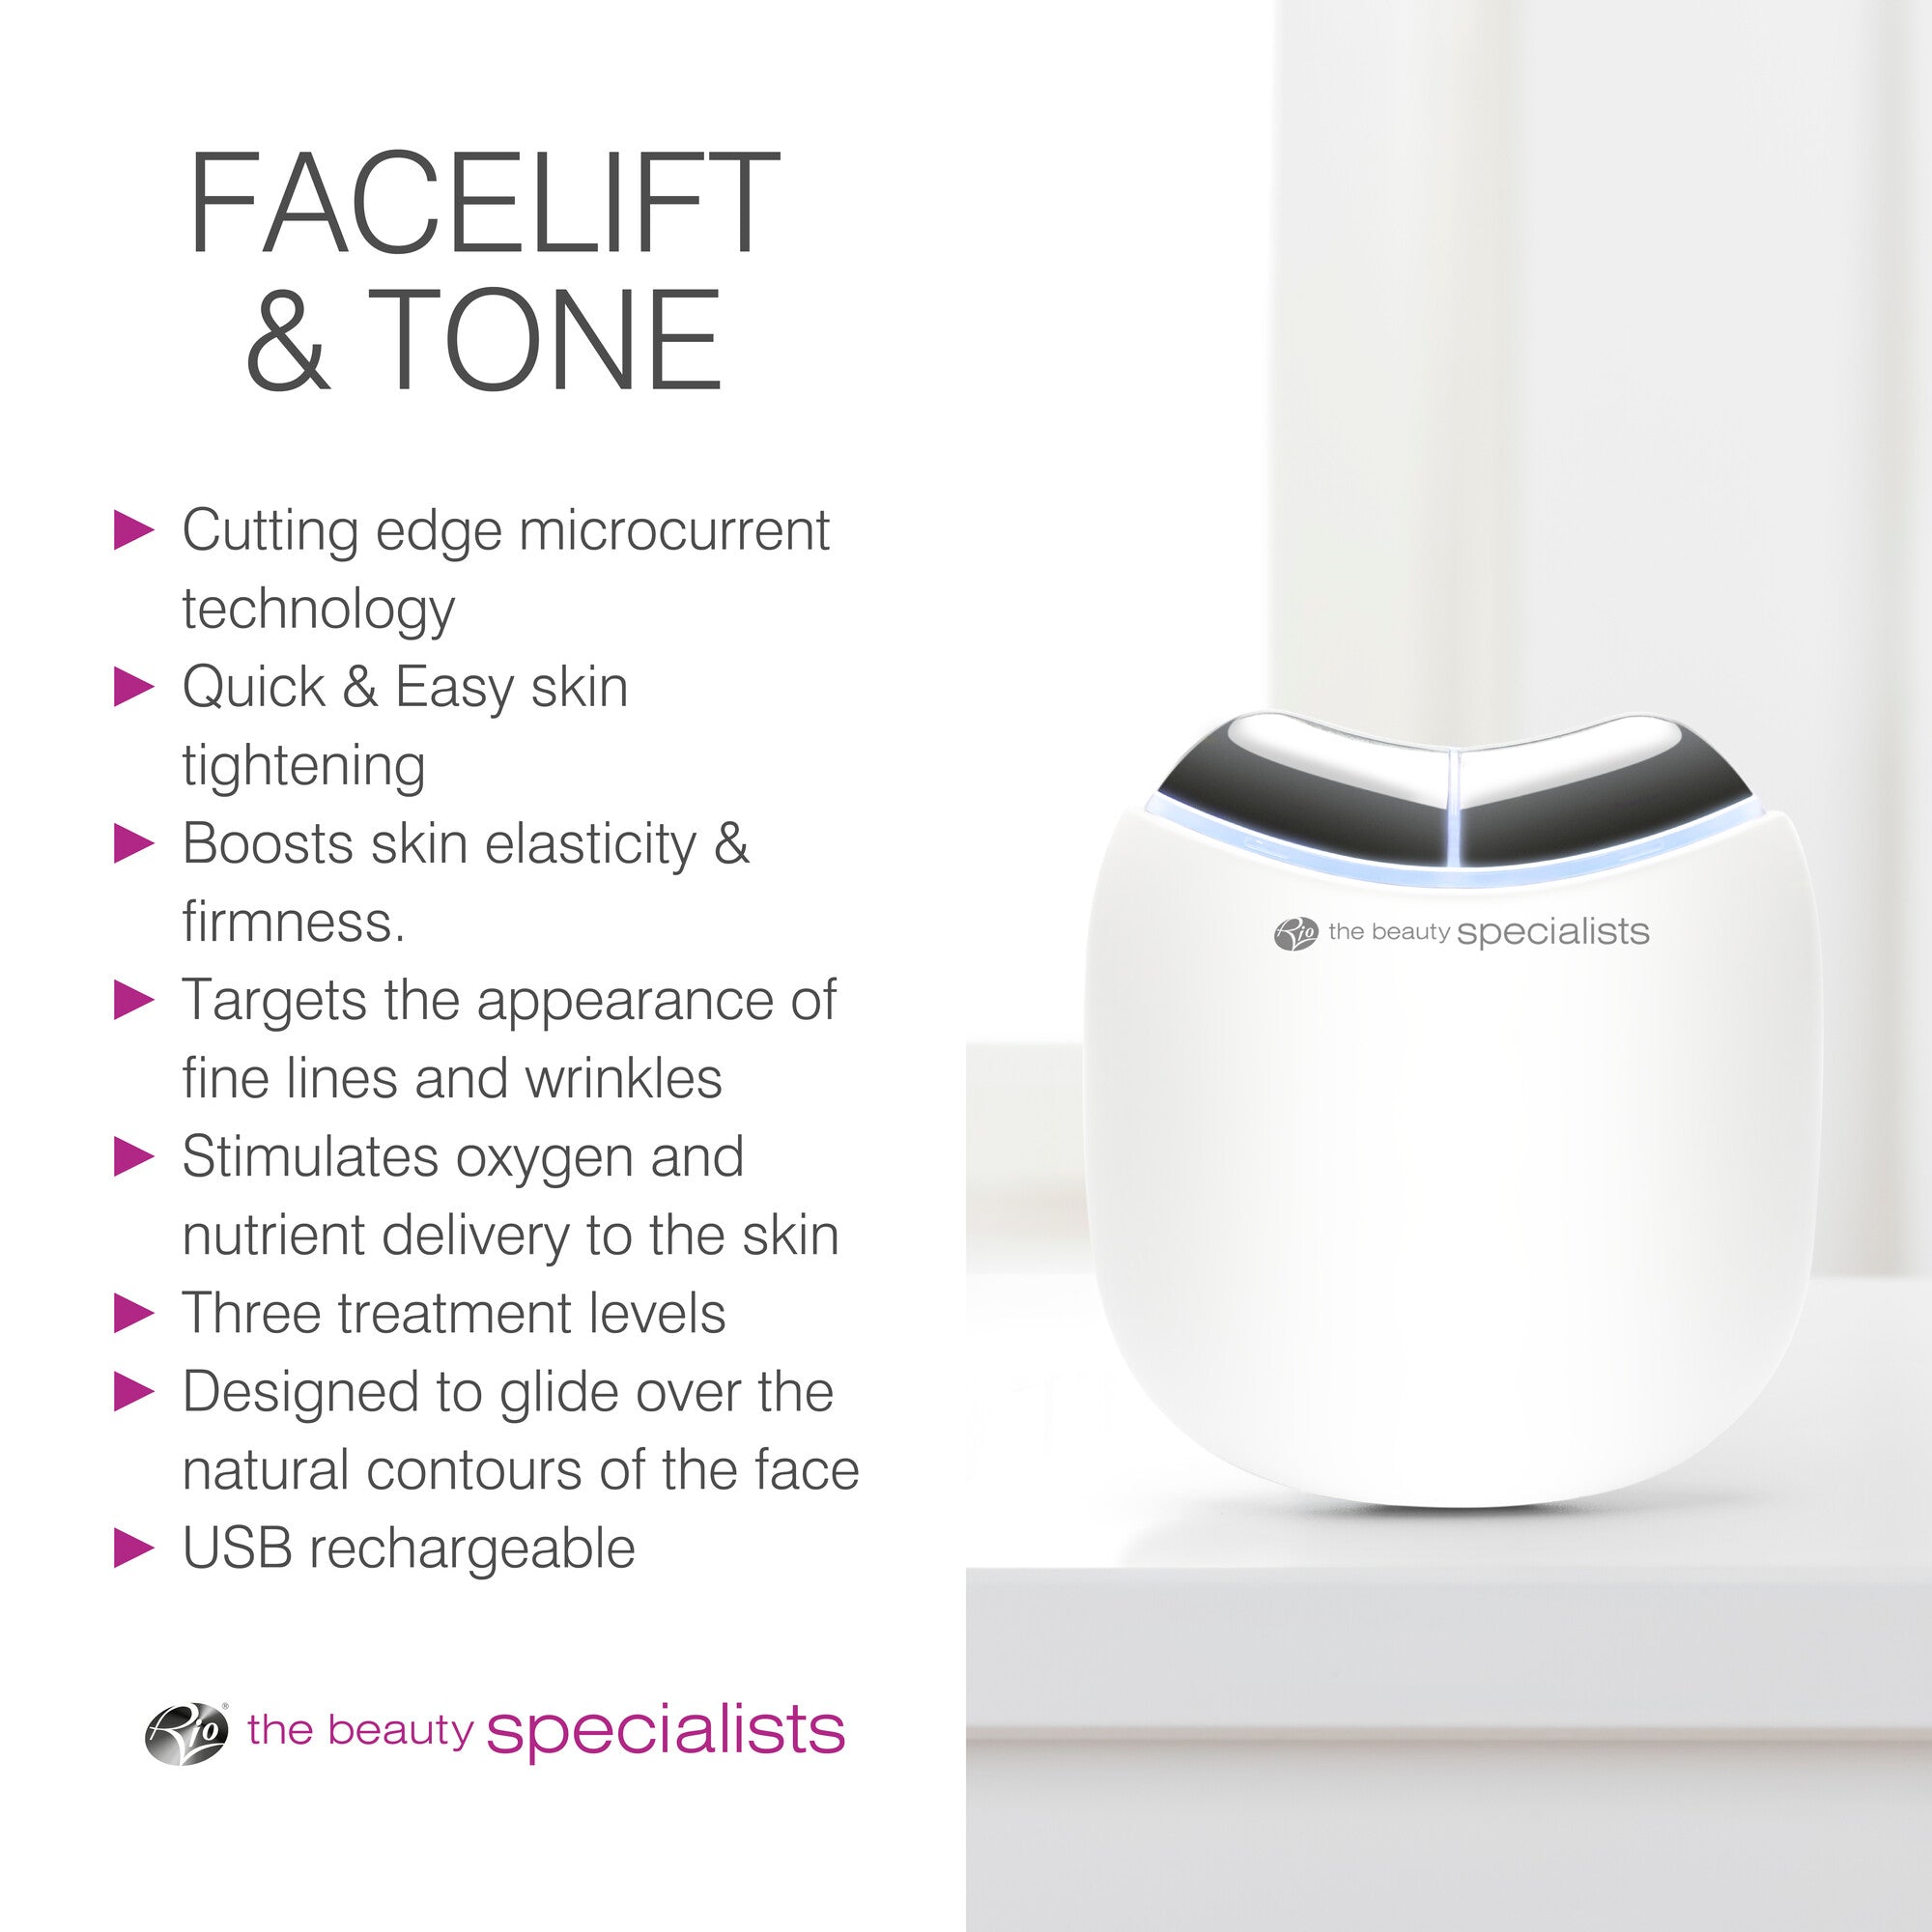 Face Lift & Tone Facial Toner